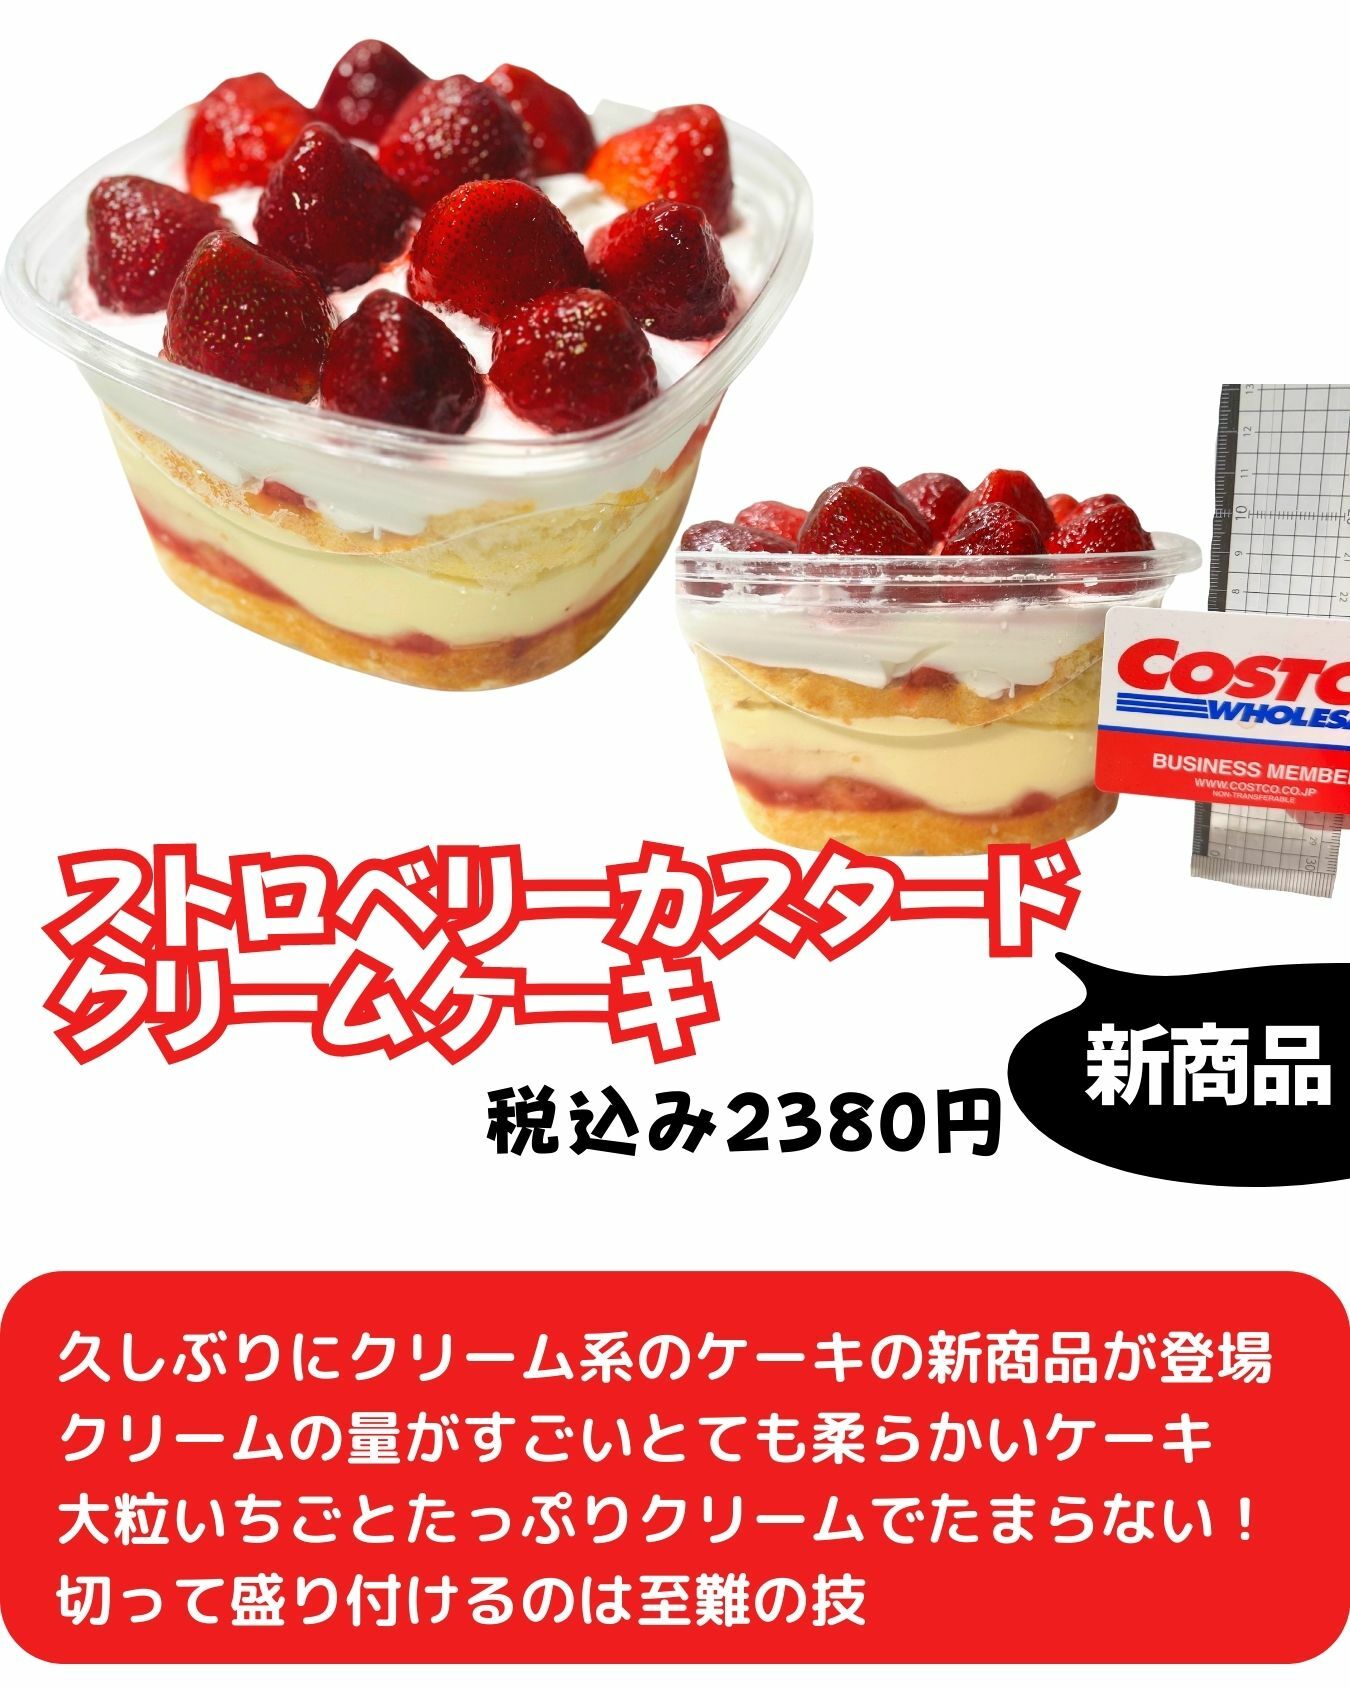 【コストコ】ストロベリーカスタードクリームケーキ